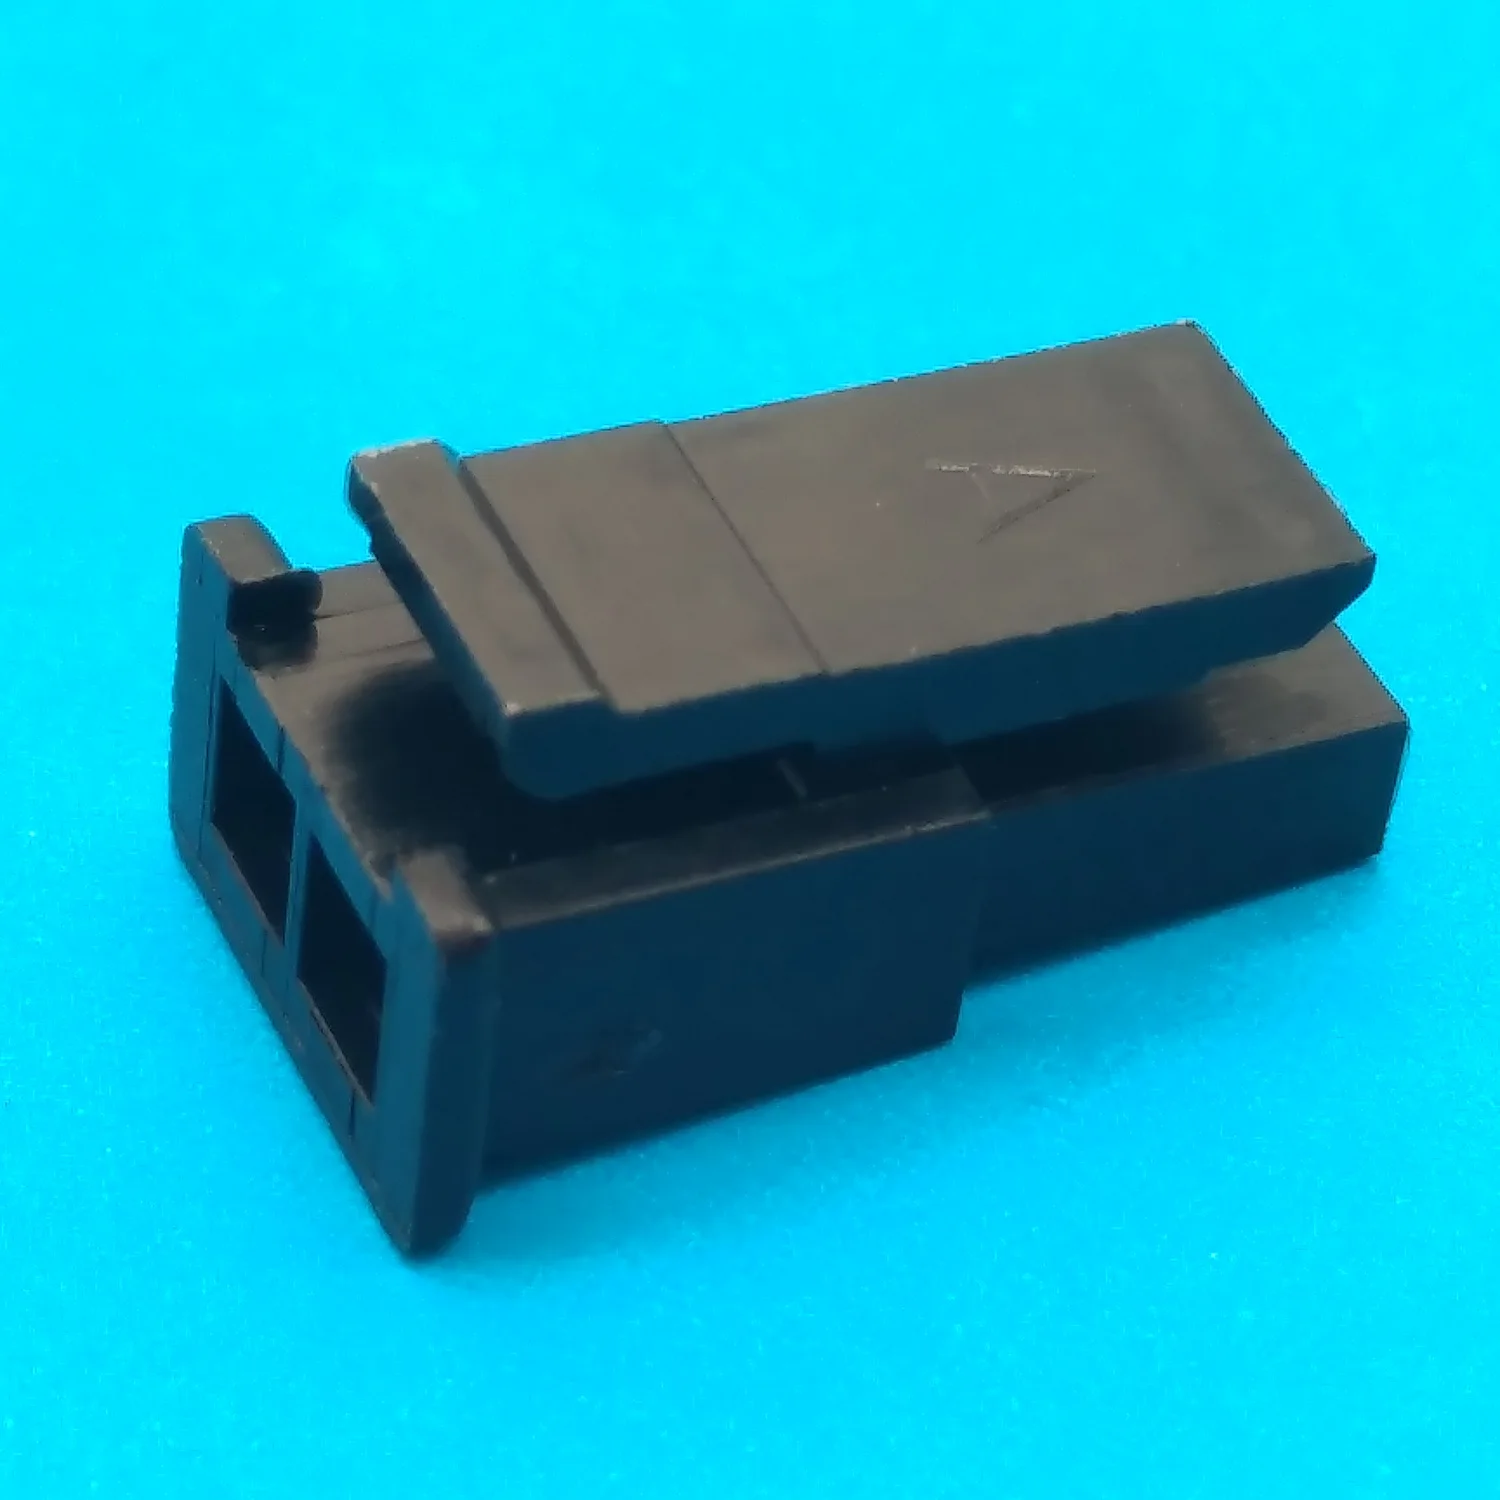 2 pin female molex connector